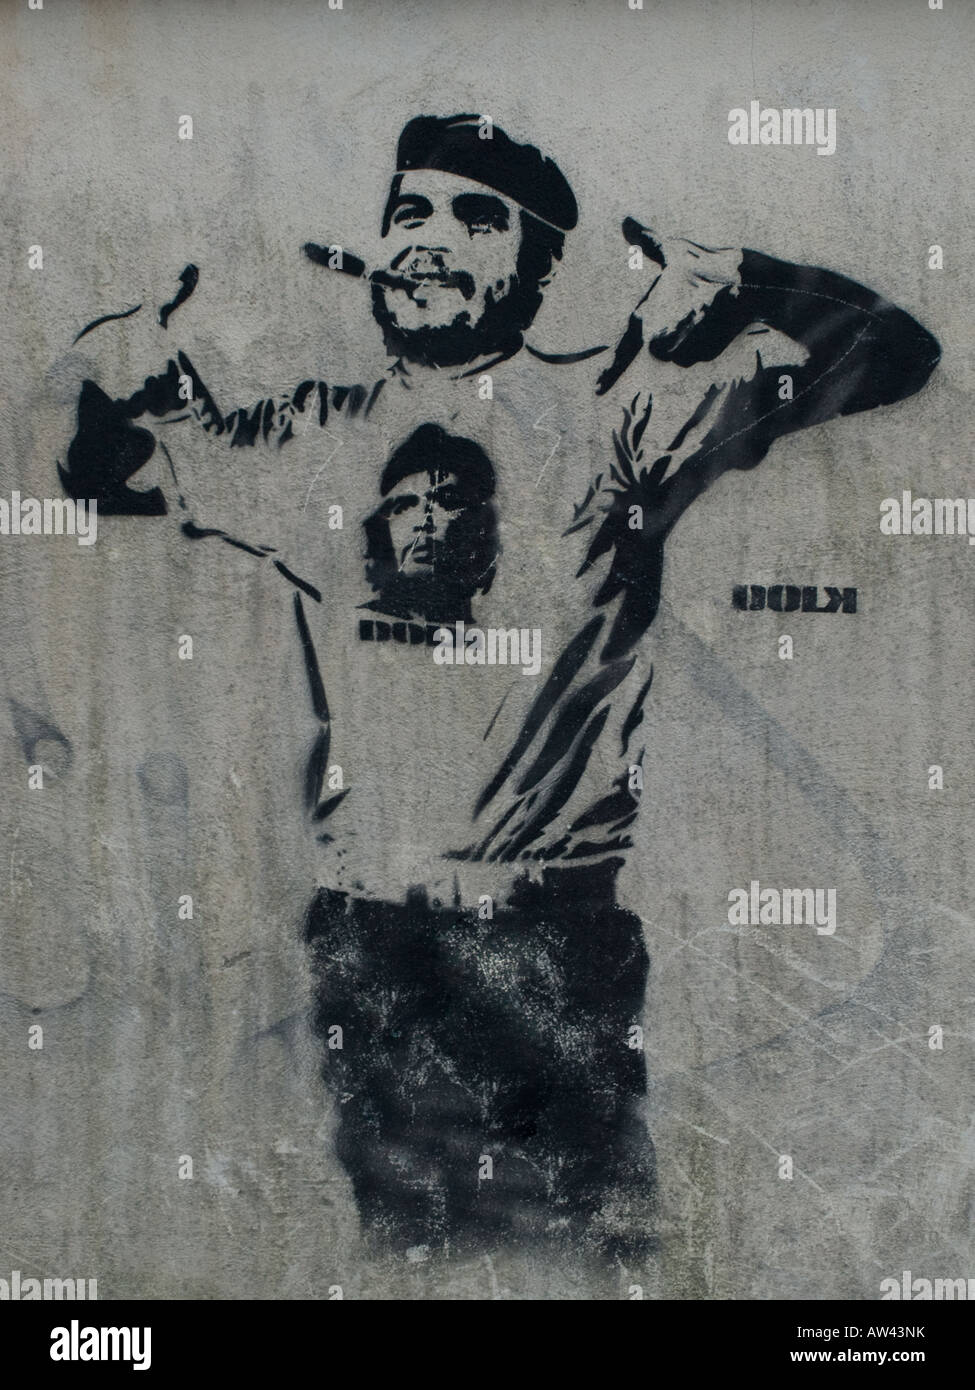 'Che XL' by Dolk Lundgren - graffiti stencil art in Bergen, Norway. Stock Photo